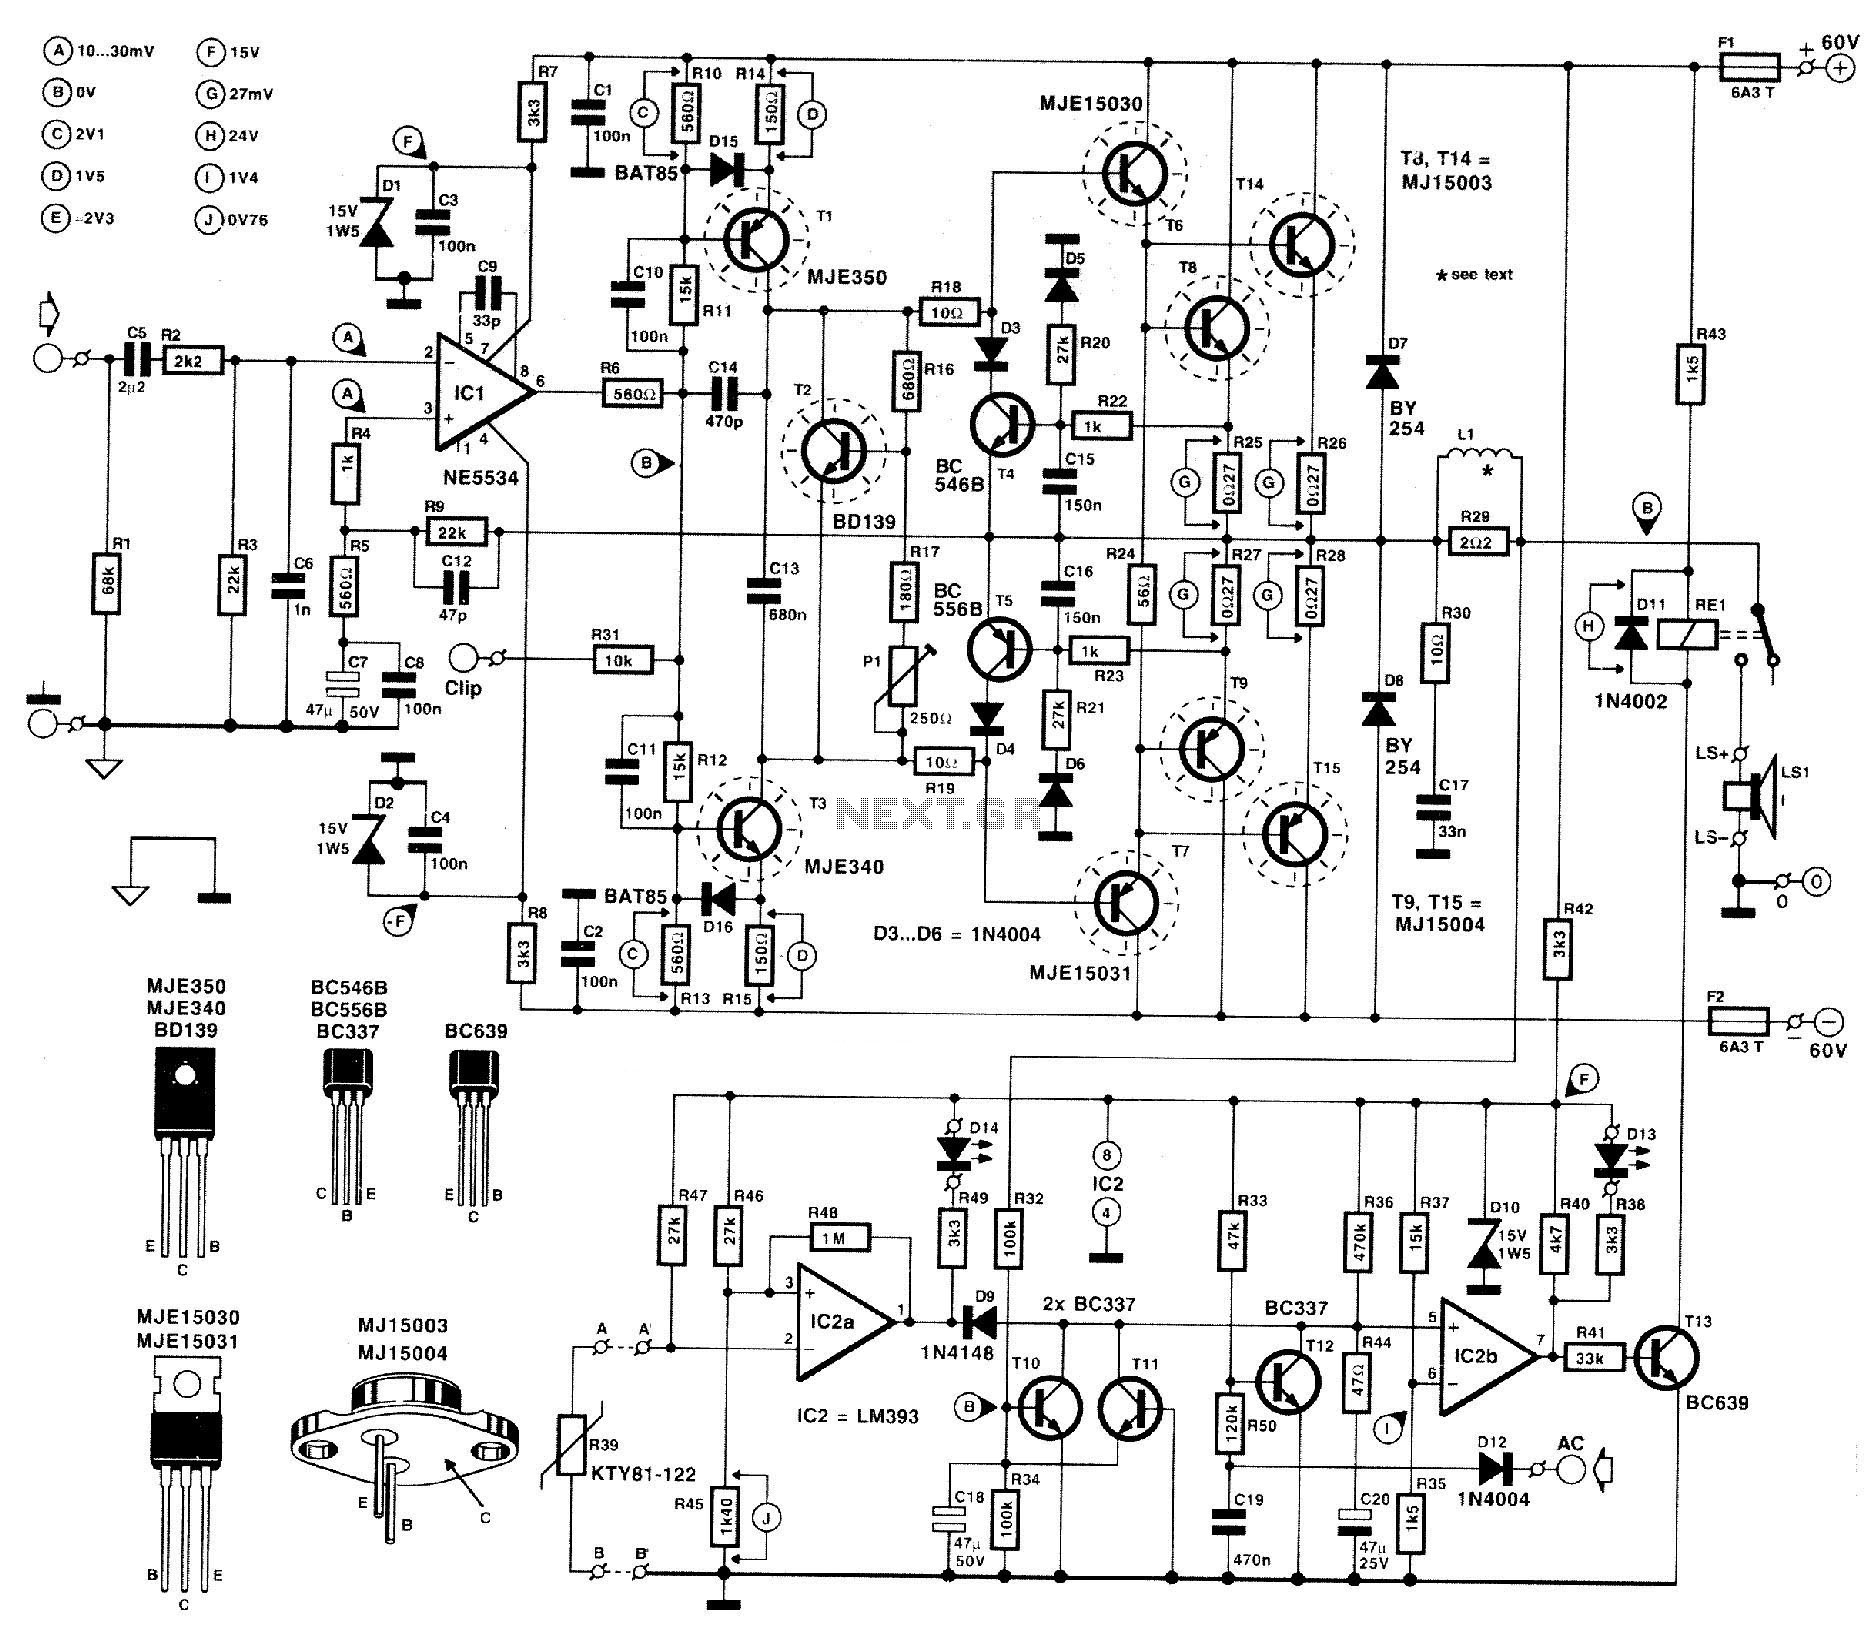 [DIAGRAM] Mosfet Audio Amplifier Circuit Diagrams - MYDIAGRAM.ONLINE